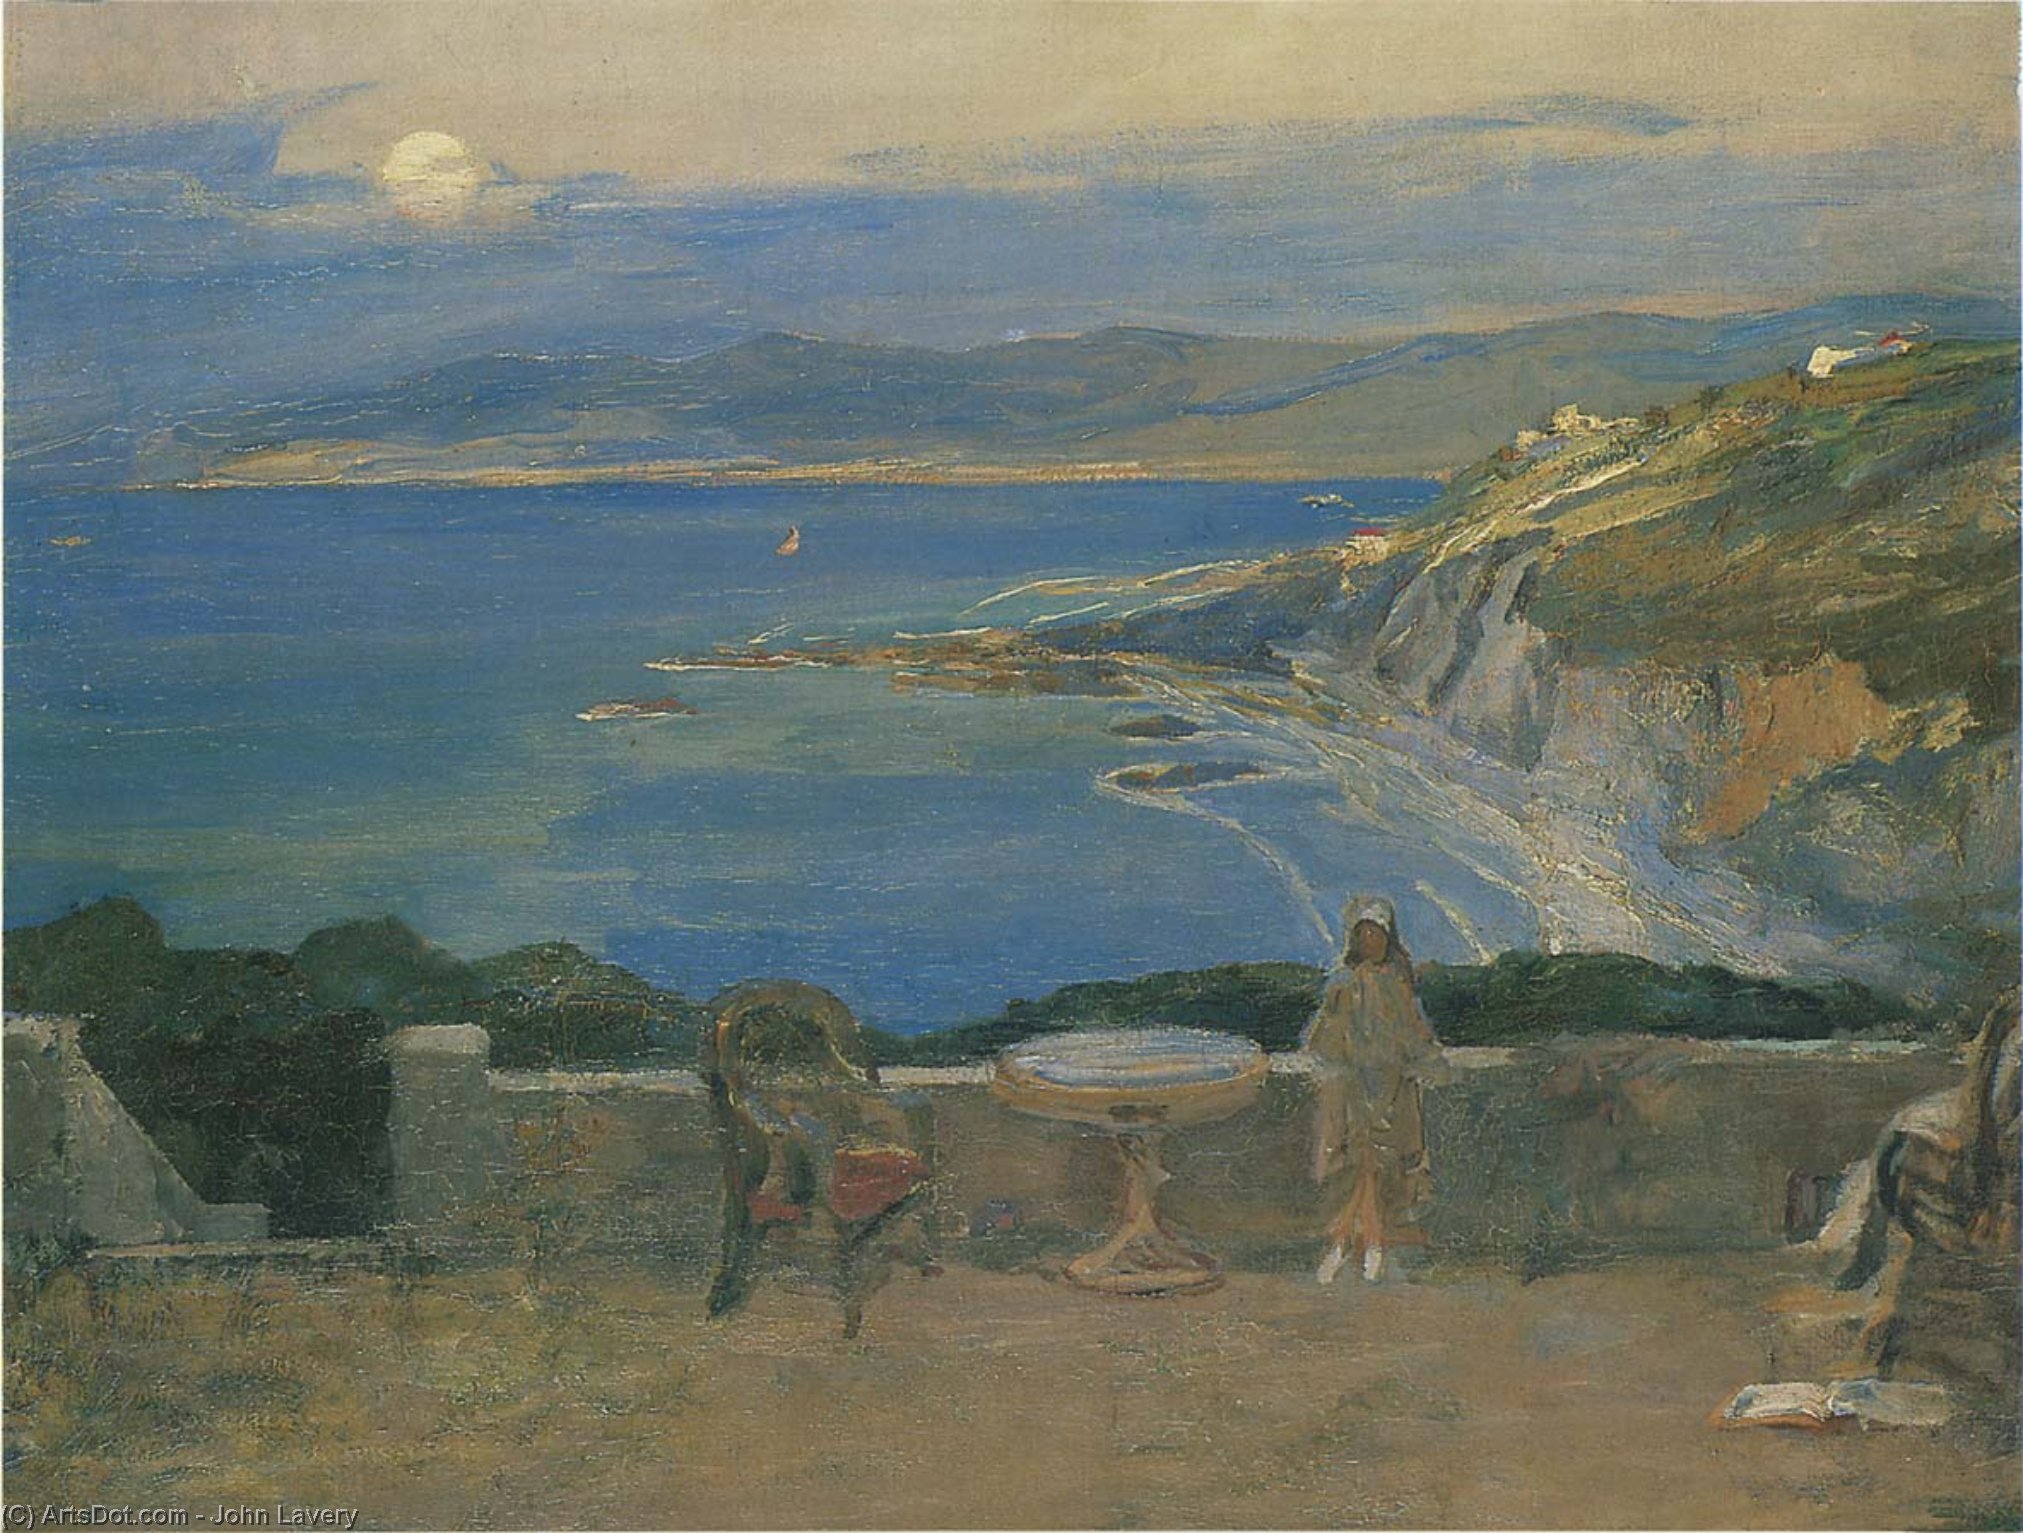 Buy Museum Art Reproductions The Rising Moon, Tangier Bay, 1912 by John Lavery | ArtsDot.com